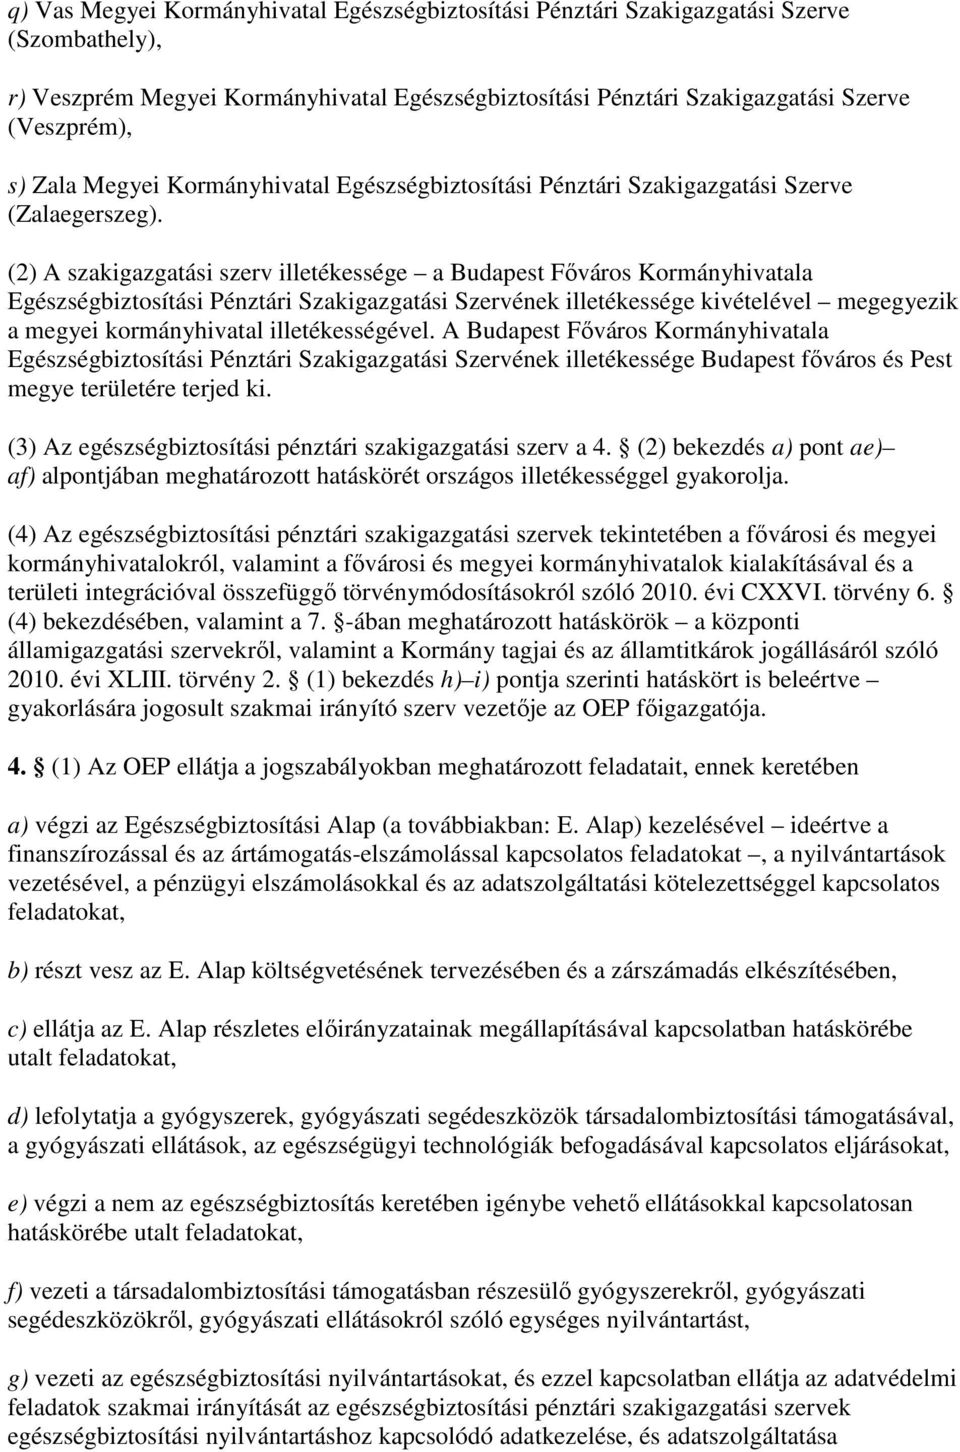 (2) A szakigazgatási szerv illetékessége a Budapest Fıváros Kormányhivatala Egészségbiztosítási Pénztári Szakigazgatási Szervének illetékessége kivételével megegyezik a megyei kormányhivatal